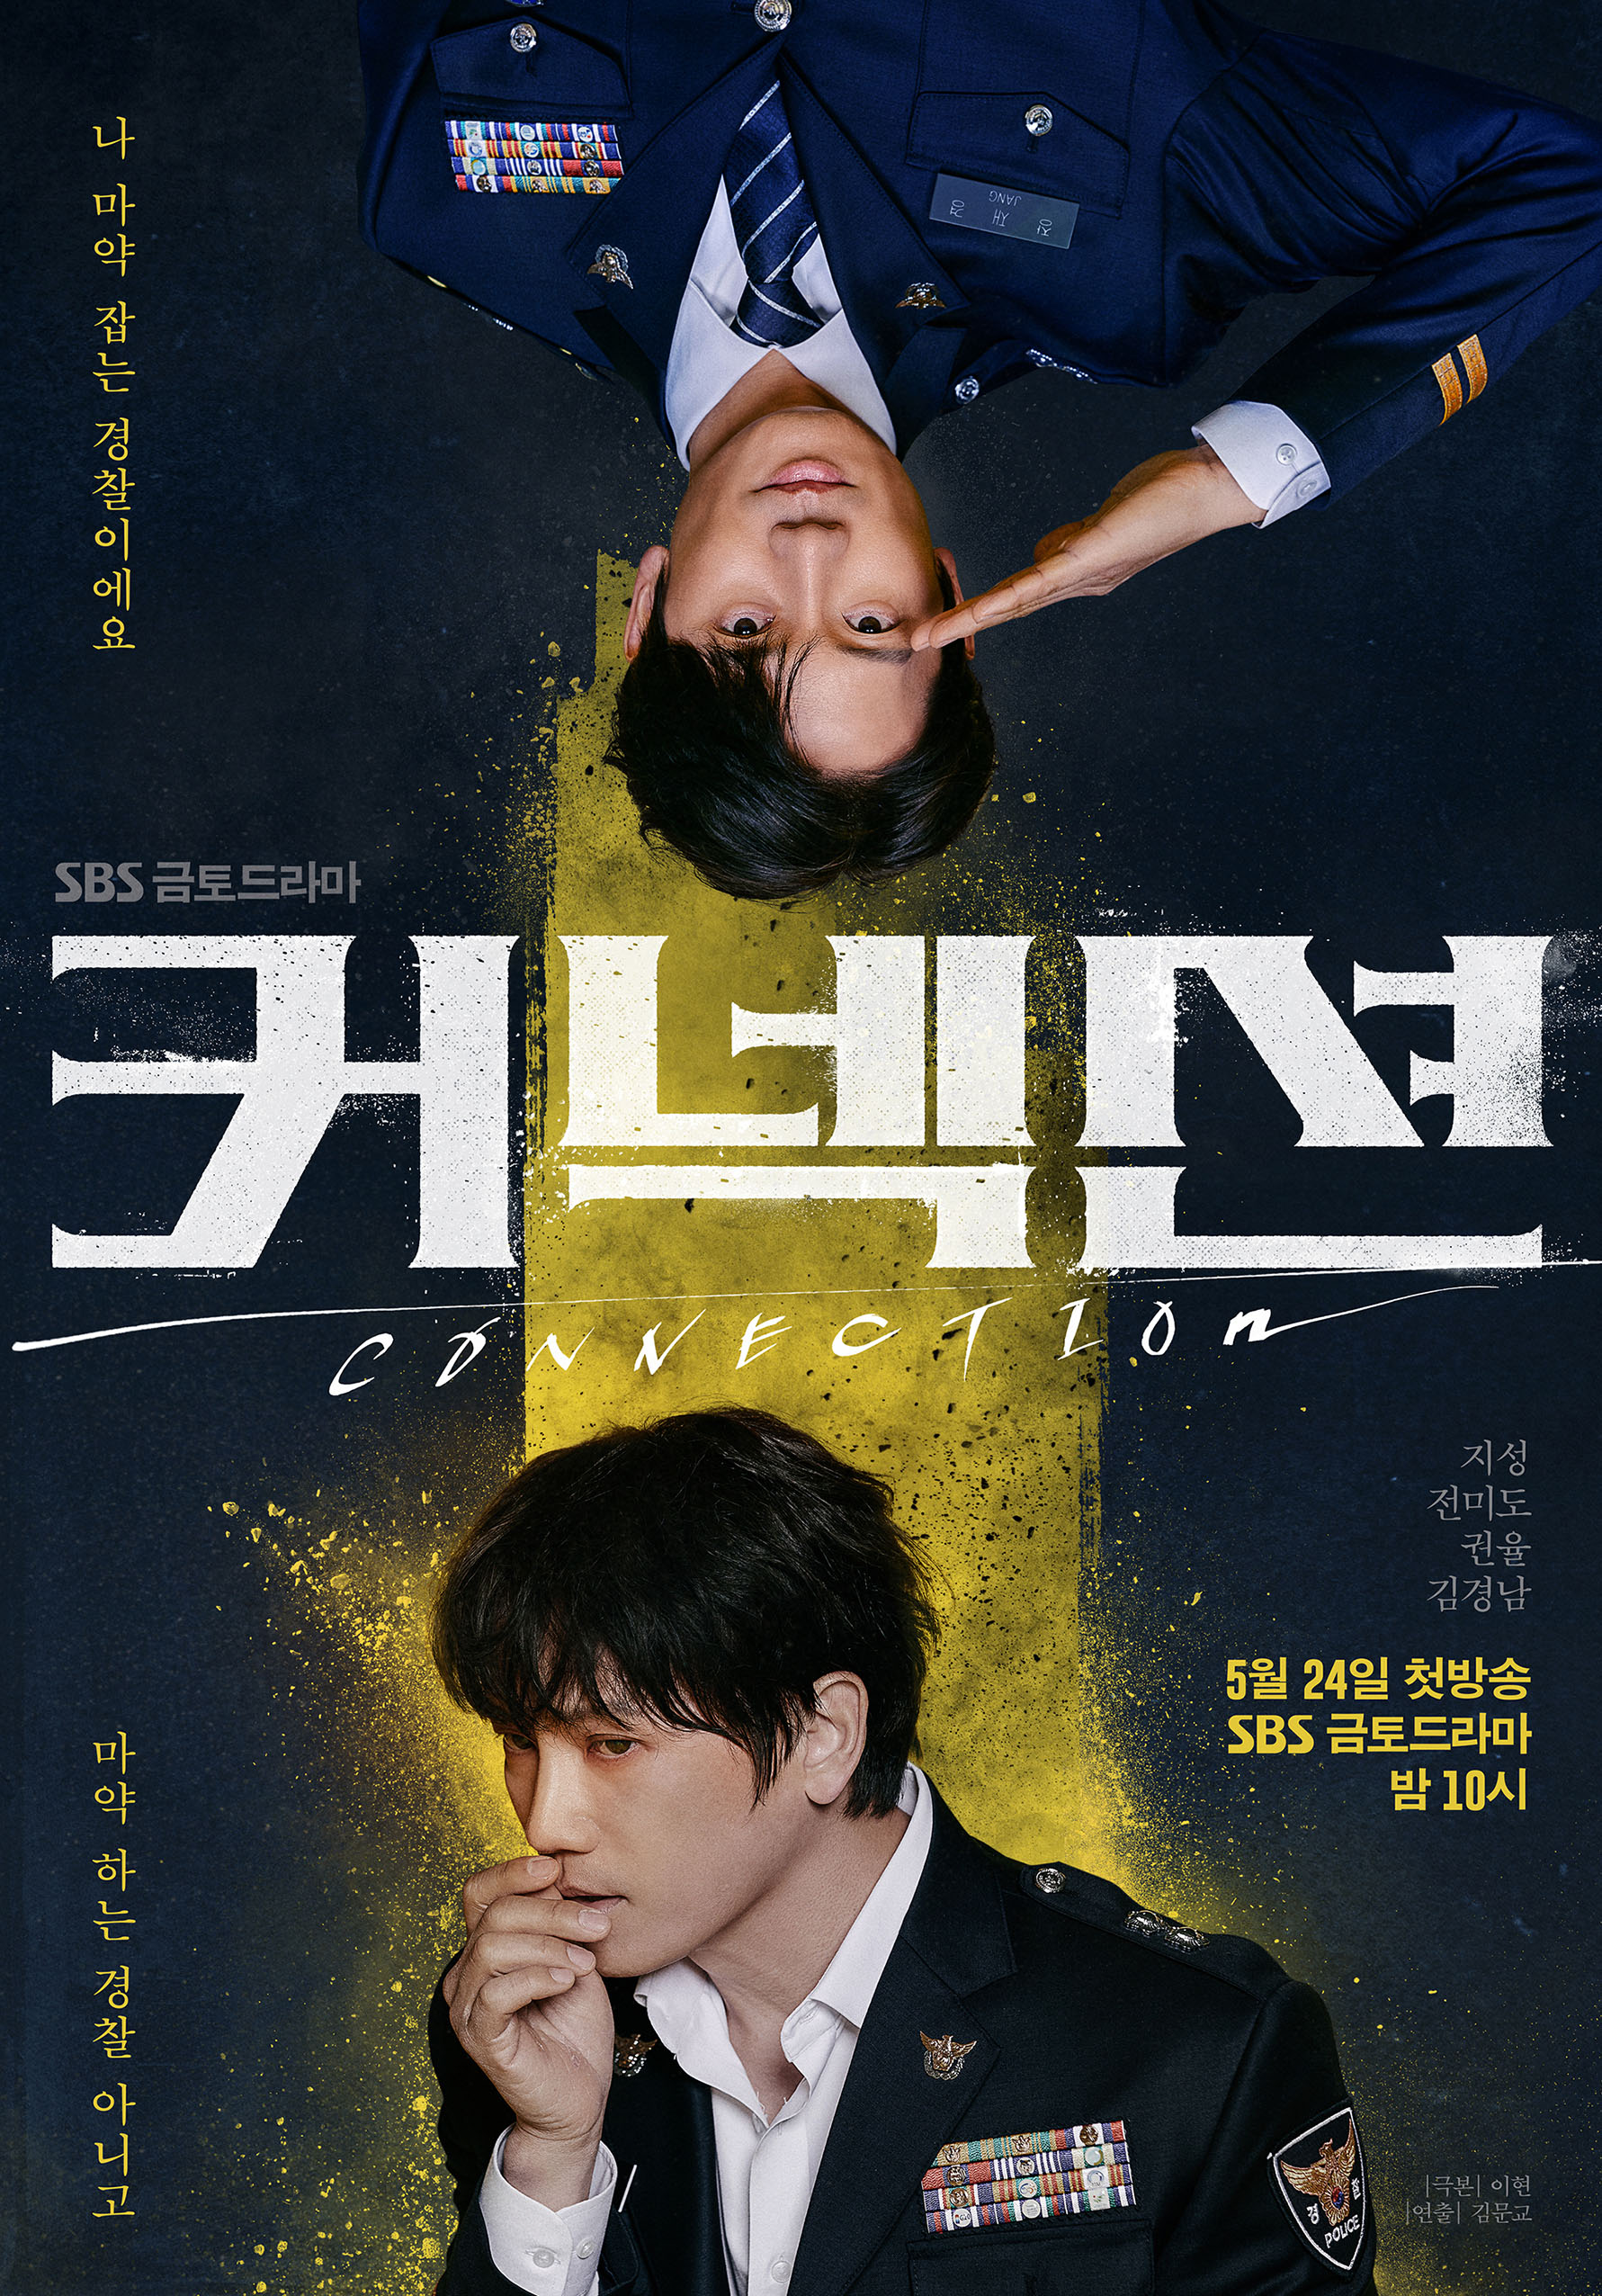 Trong phim kinh dị điều tra tội phạm tâm lý Connection, Ji Sung đóng vai Jang Jae Kyeong, một thám tử xuất sắc thuộc đội đặc nhiệm phòng chóng ma túy. Anh ấy là người có niềm tin và nguyên tắc làm việc vững chắc. Một ngày nọ, cuộc đời Jang Jae Kyeong rơi vào khủng hoảng khi anh lại dính đến chất cấm